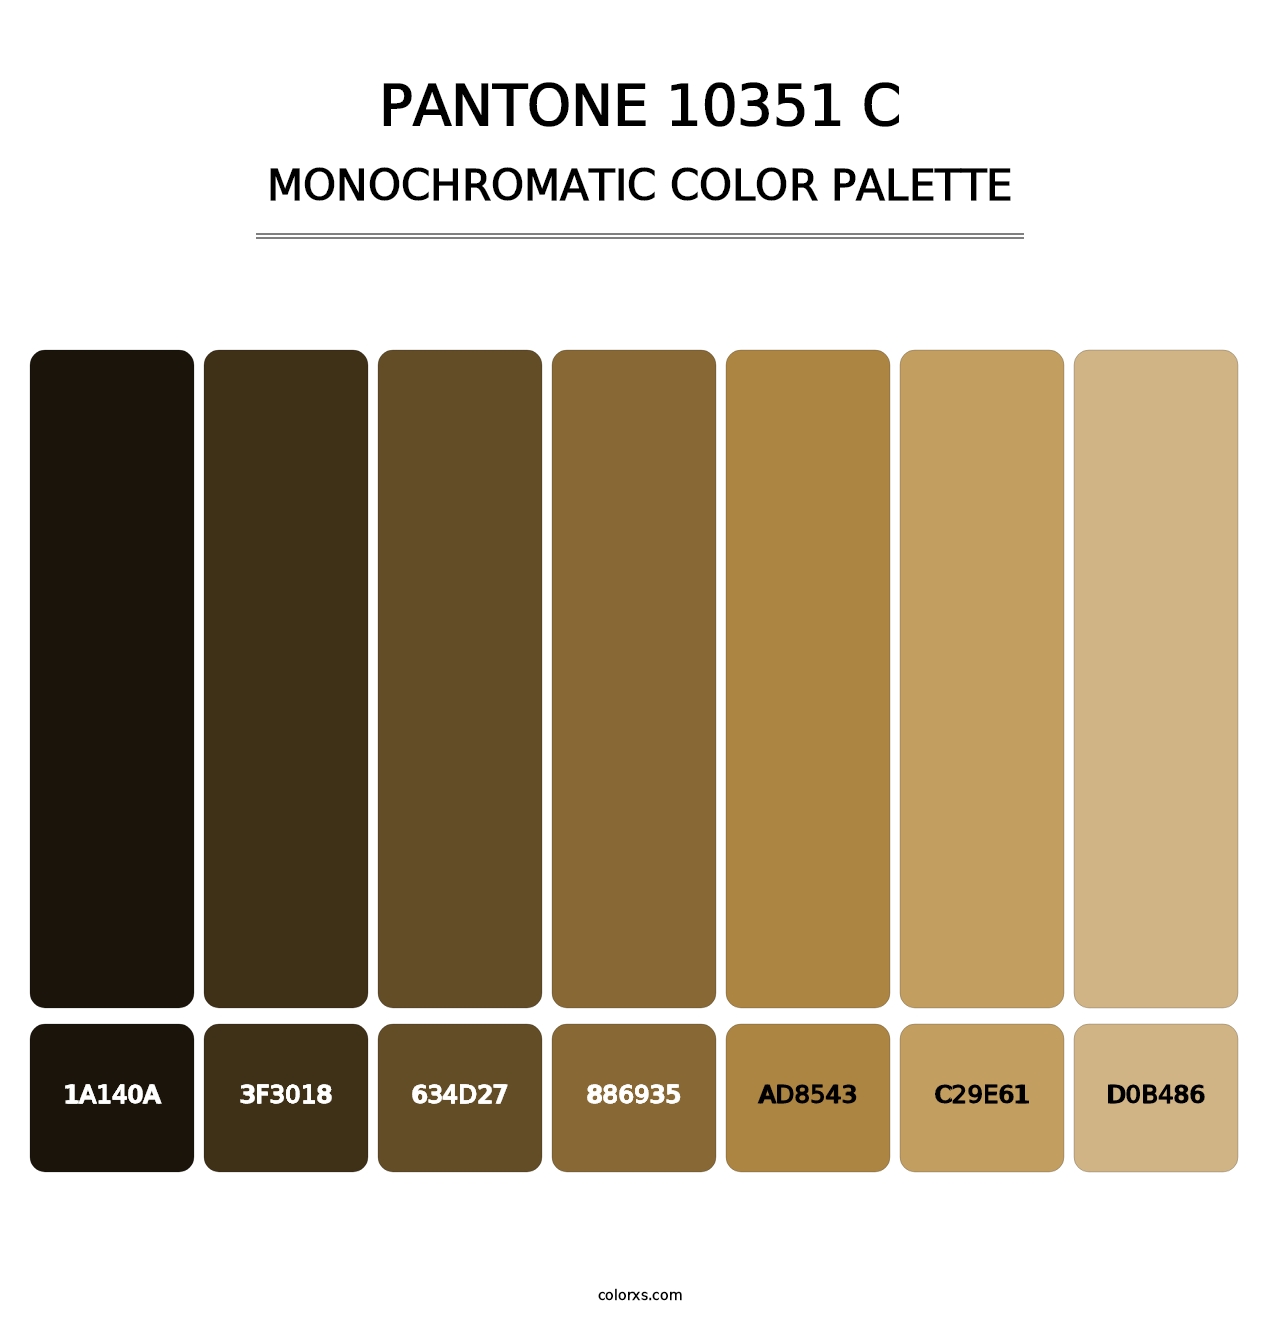 PANTONE 10351 C - Monochromatic Color Palette